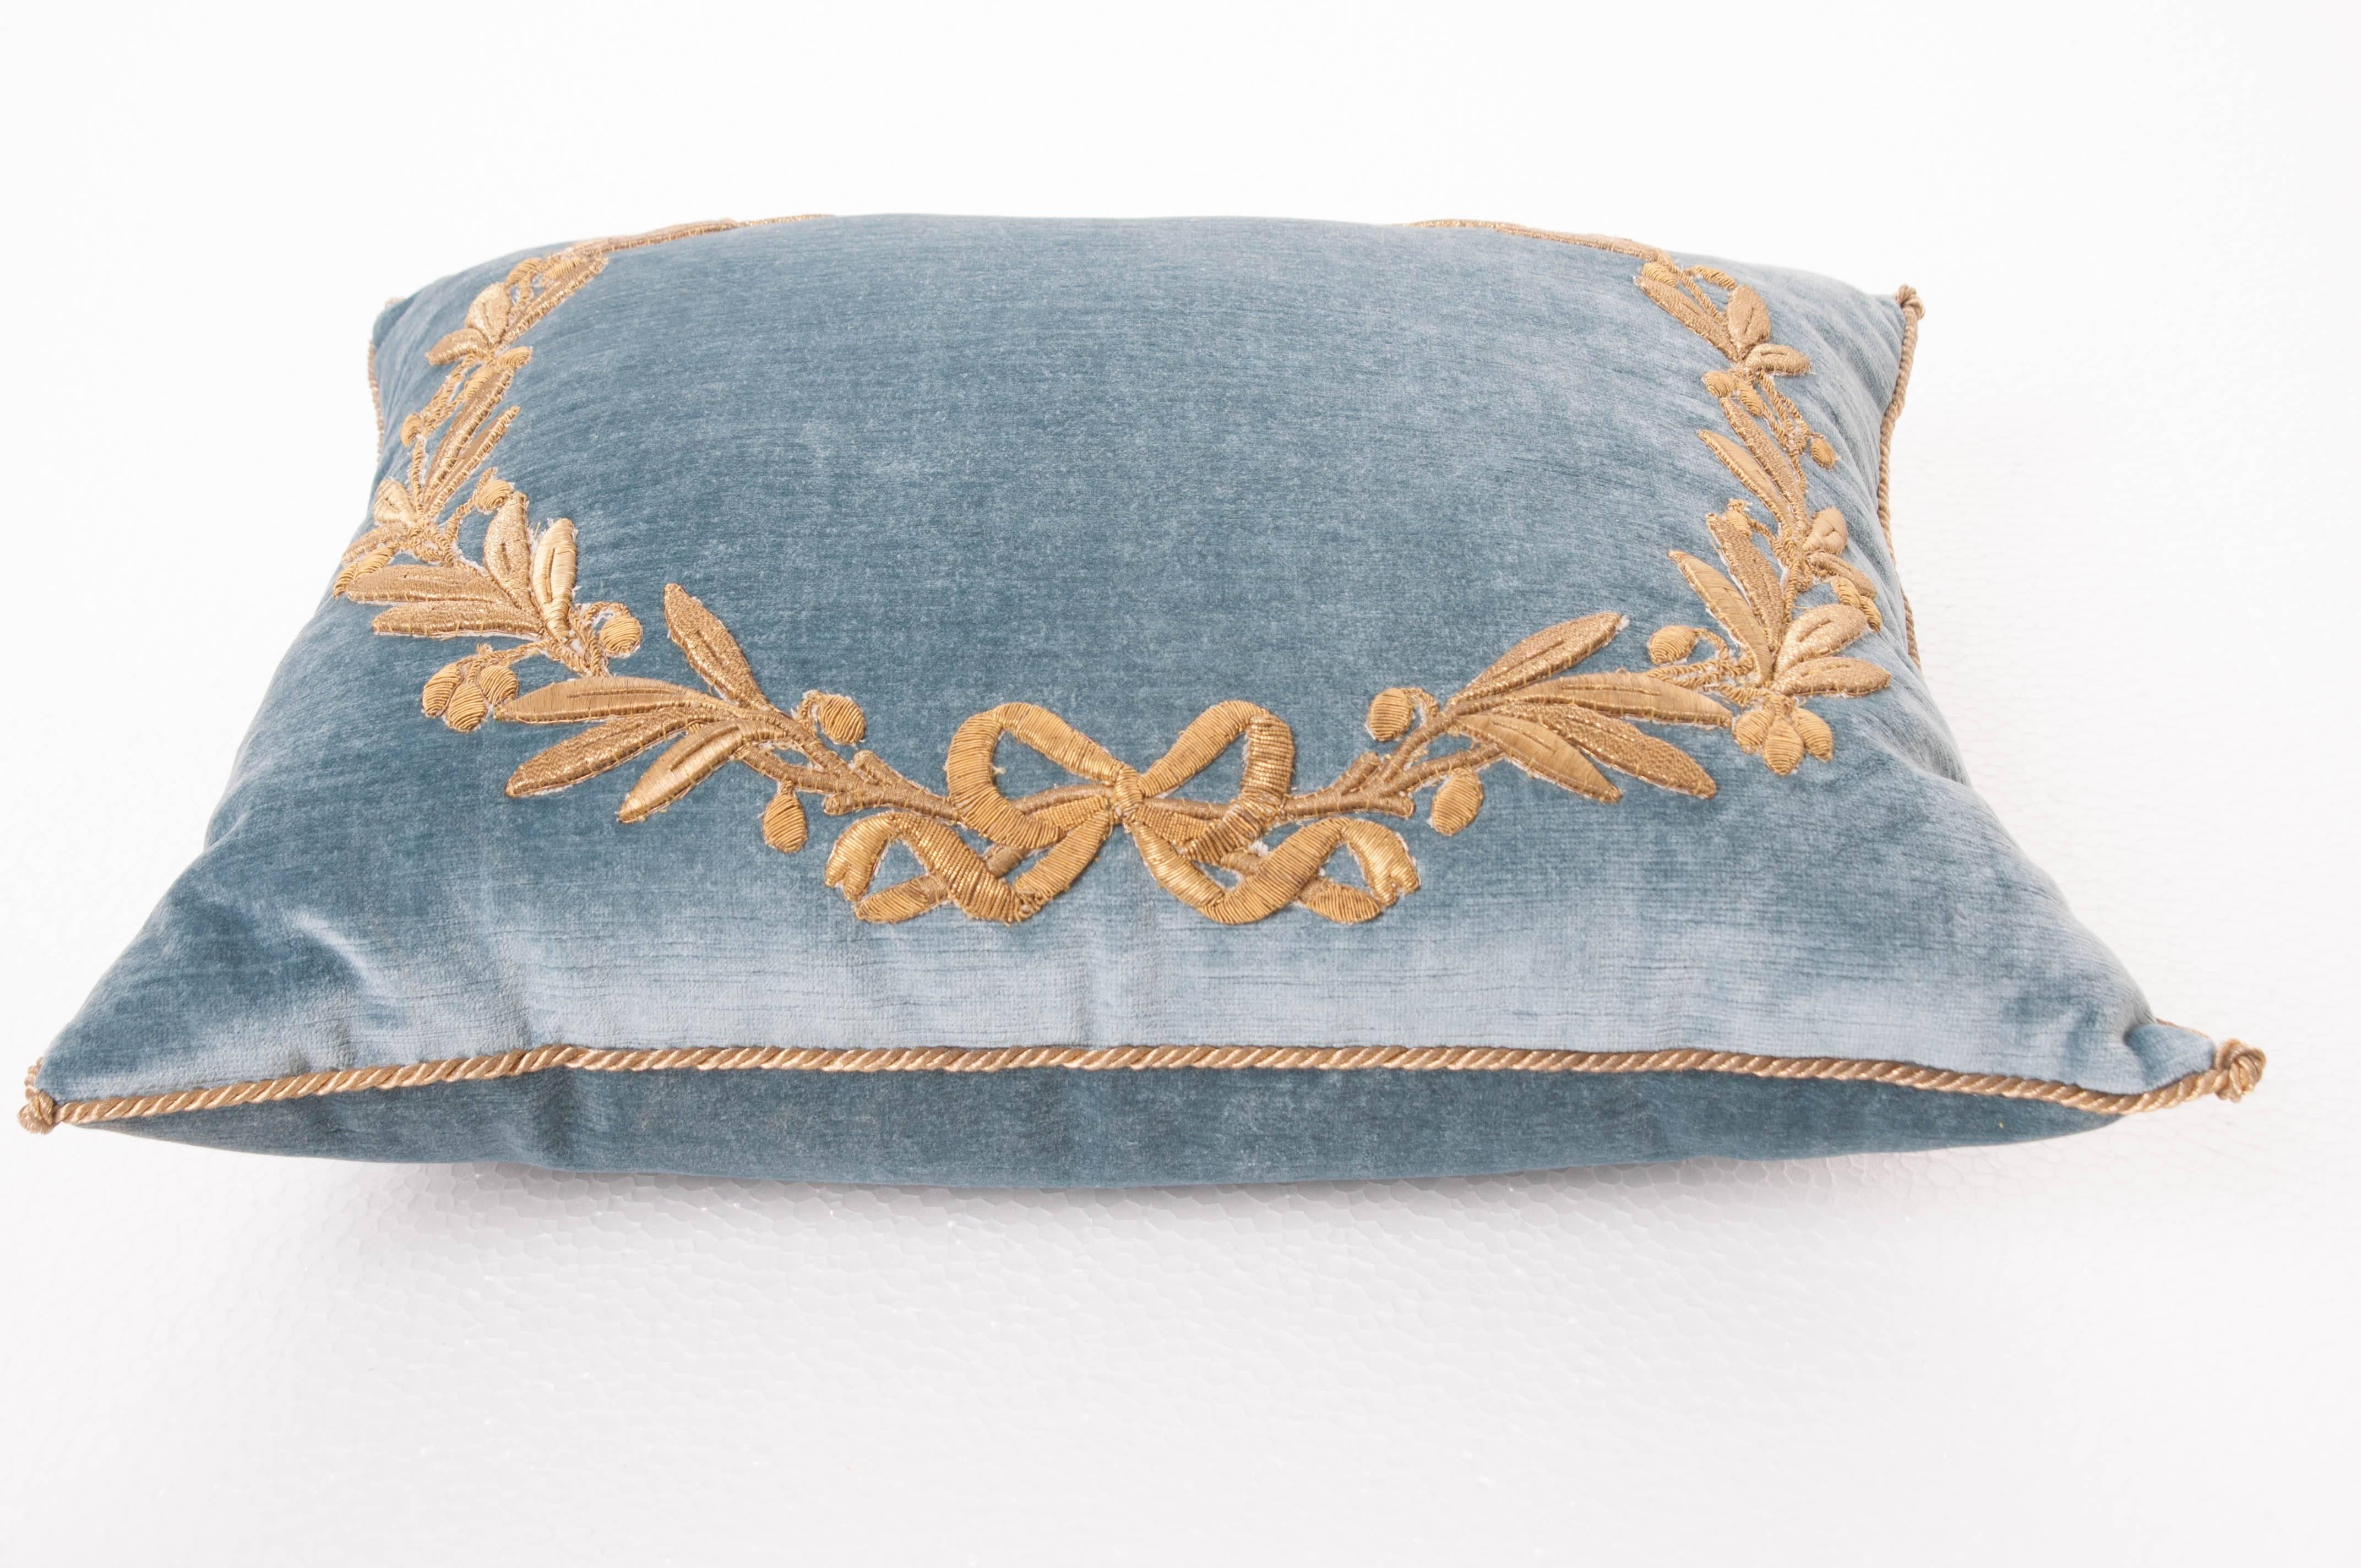 19th Century Antique Textile Pillow by B. Viz Designs